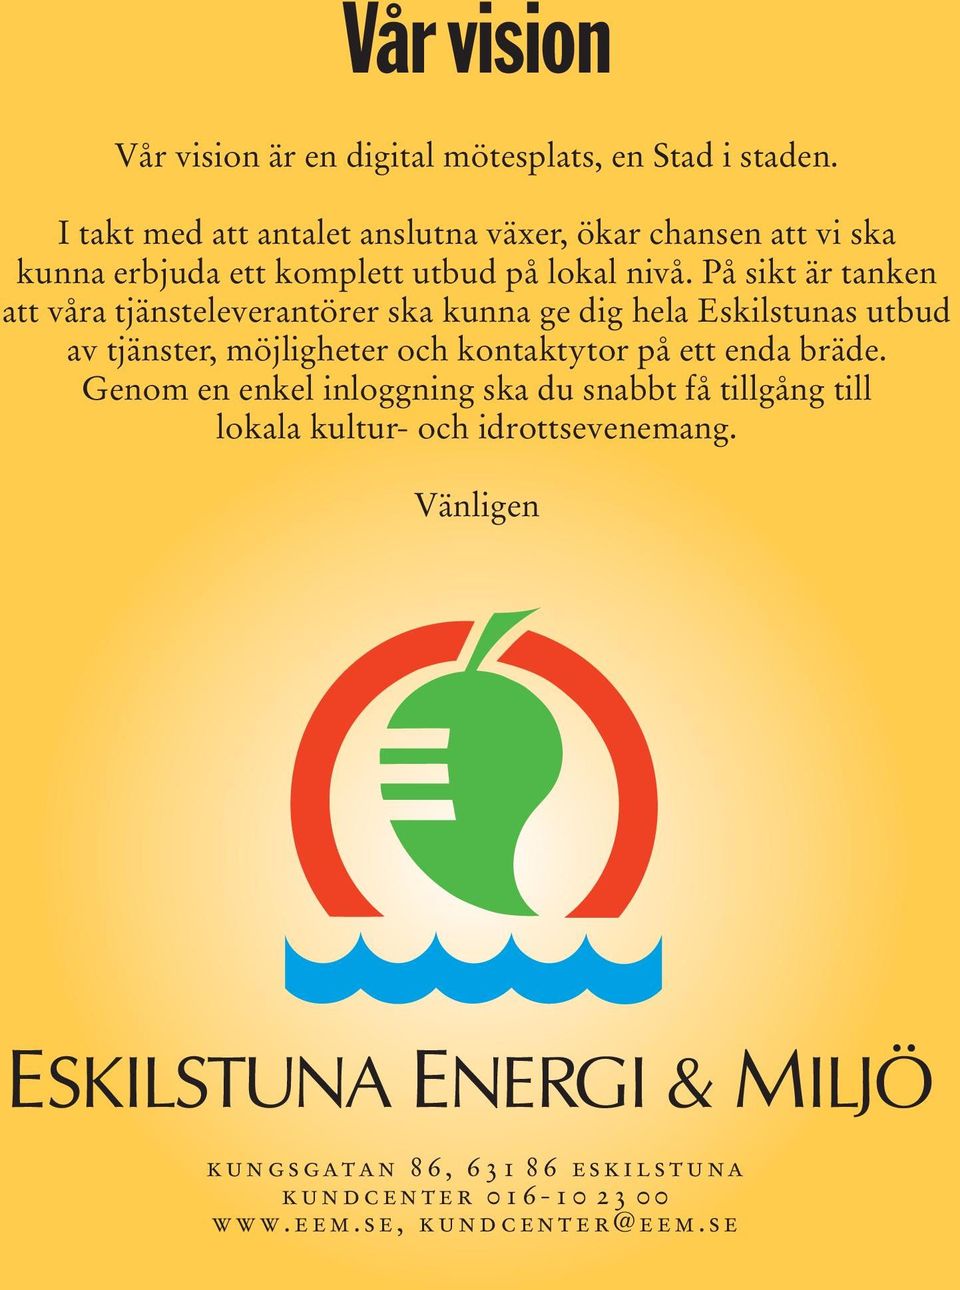 På sikt är tanken att våra tjänsteleverantörer ska kunna ge dig hela Eskilstunas utbud av tjänster, möjligheter och kontaktytor på ett enda